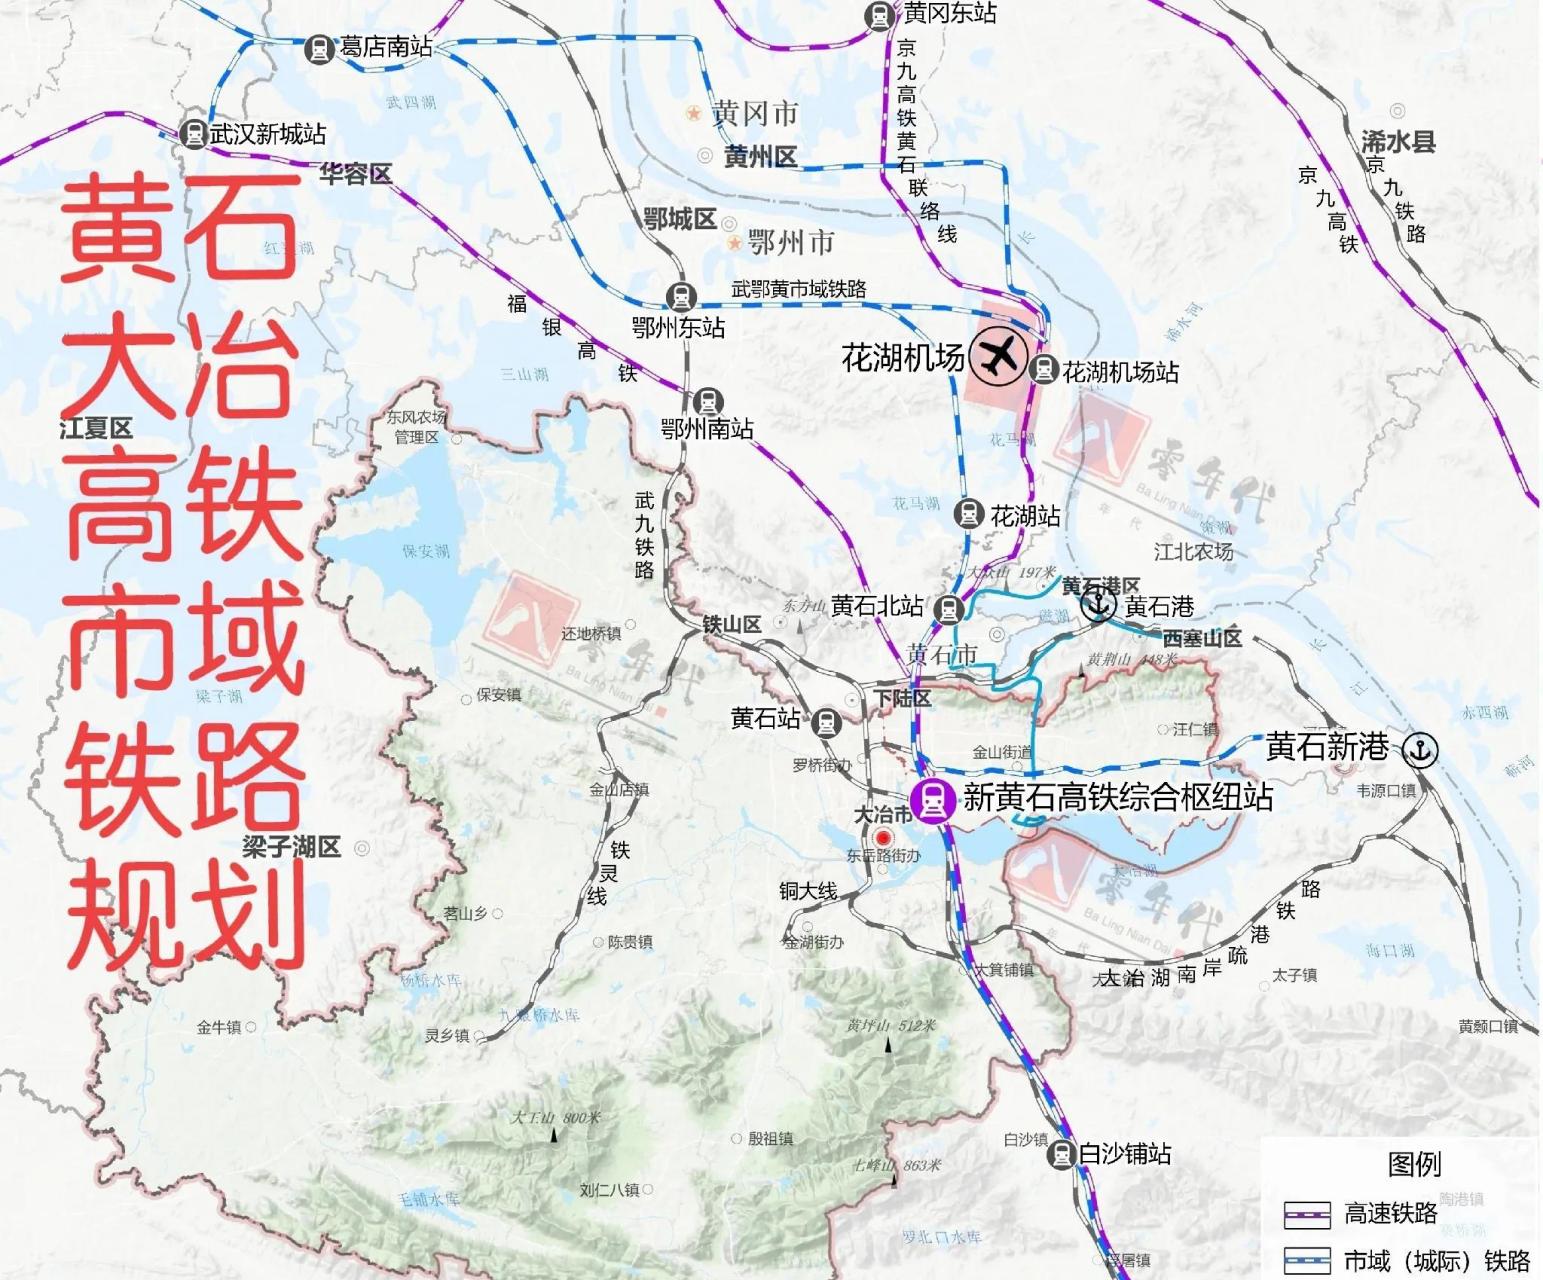 黄石大冶市最新官方铁路和轨道交通规划,对比省级,黄石,鄂州规划,高铁